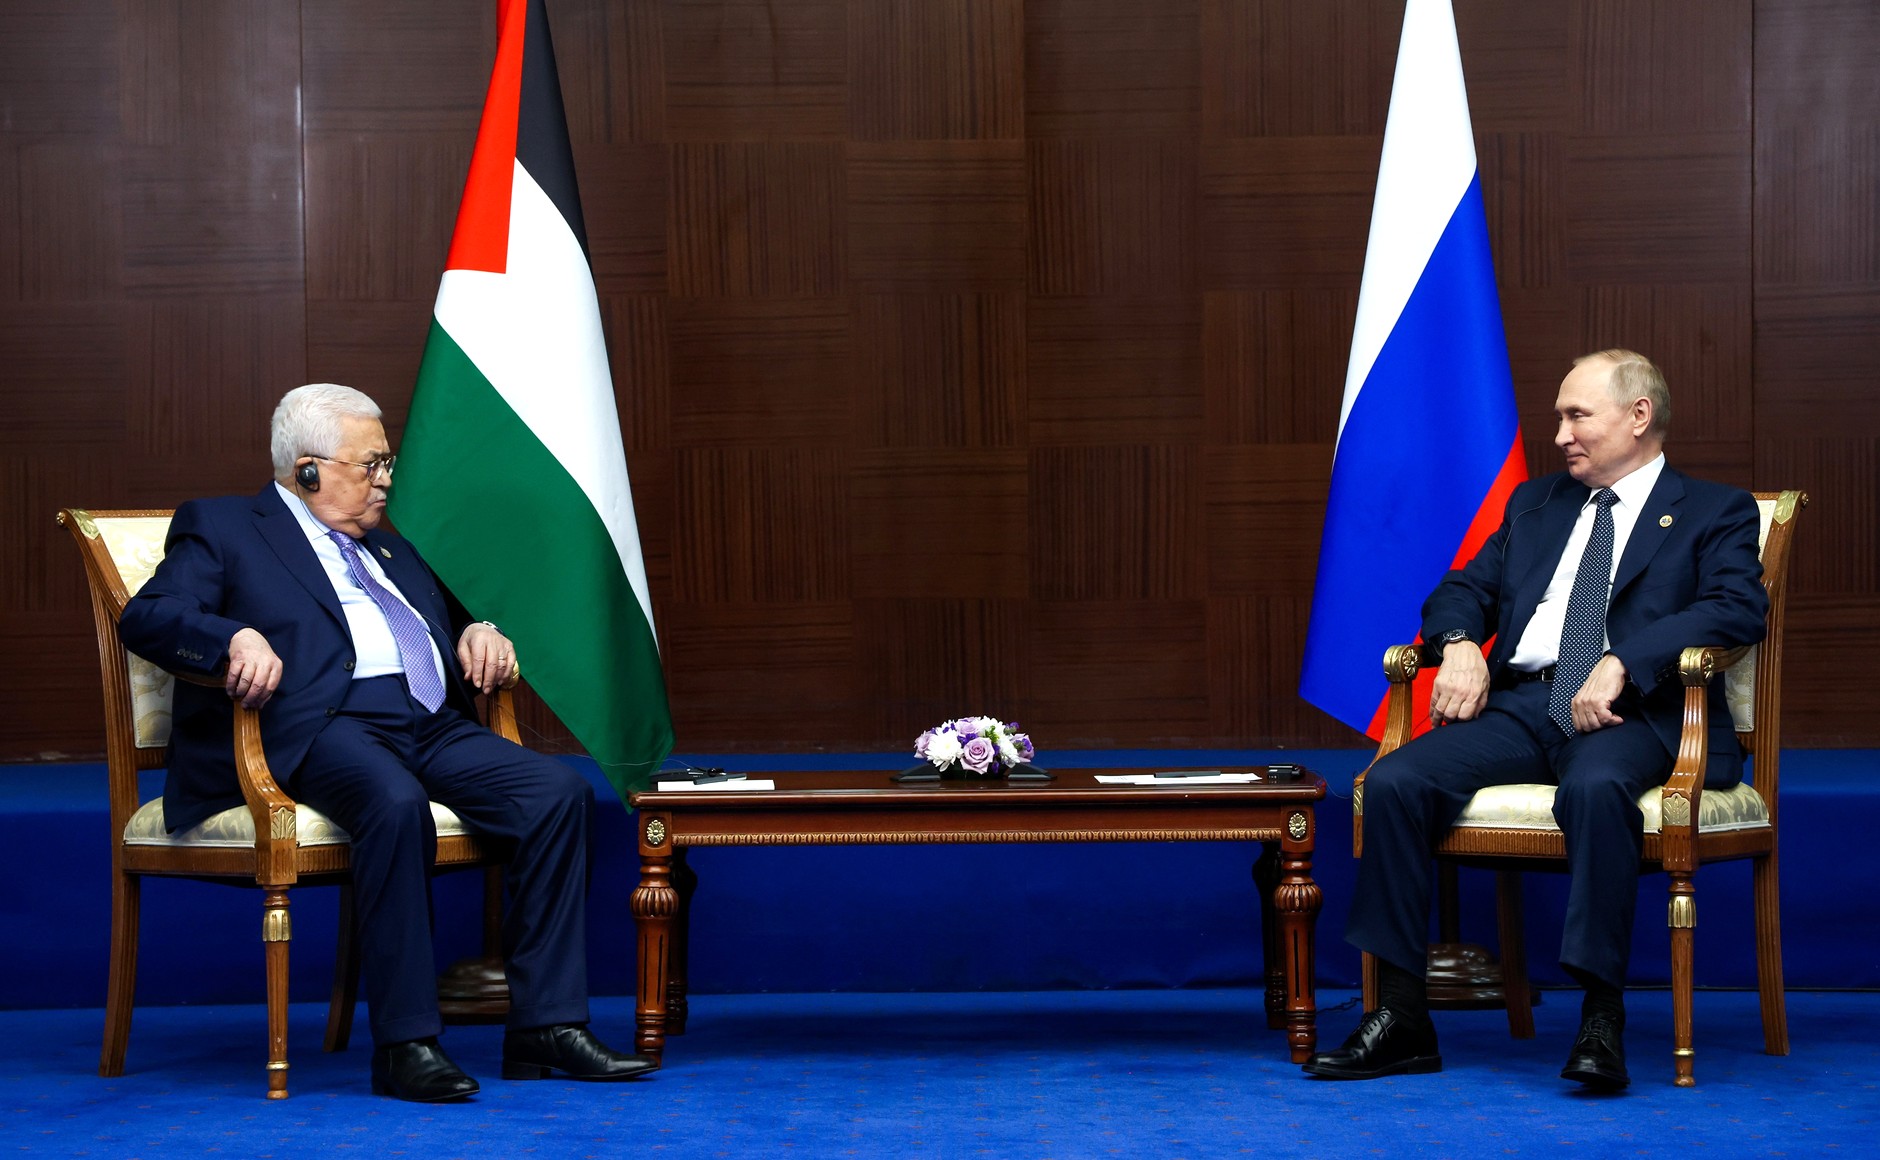 Аббас в разговоре с Путиным поддержал действия Москвы по защите конституционного строя